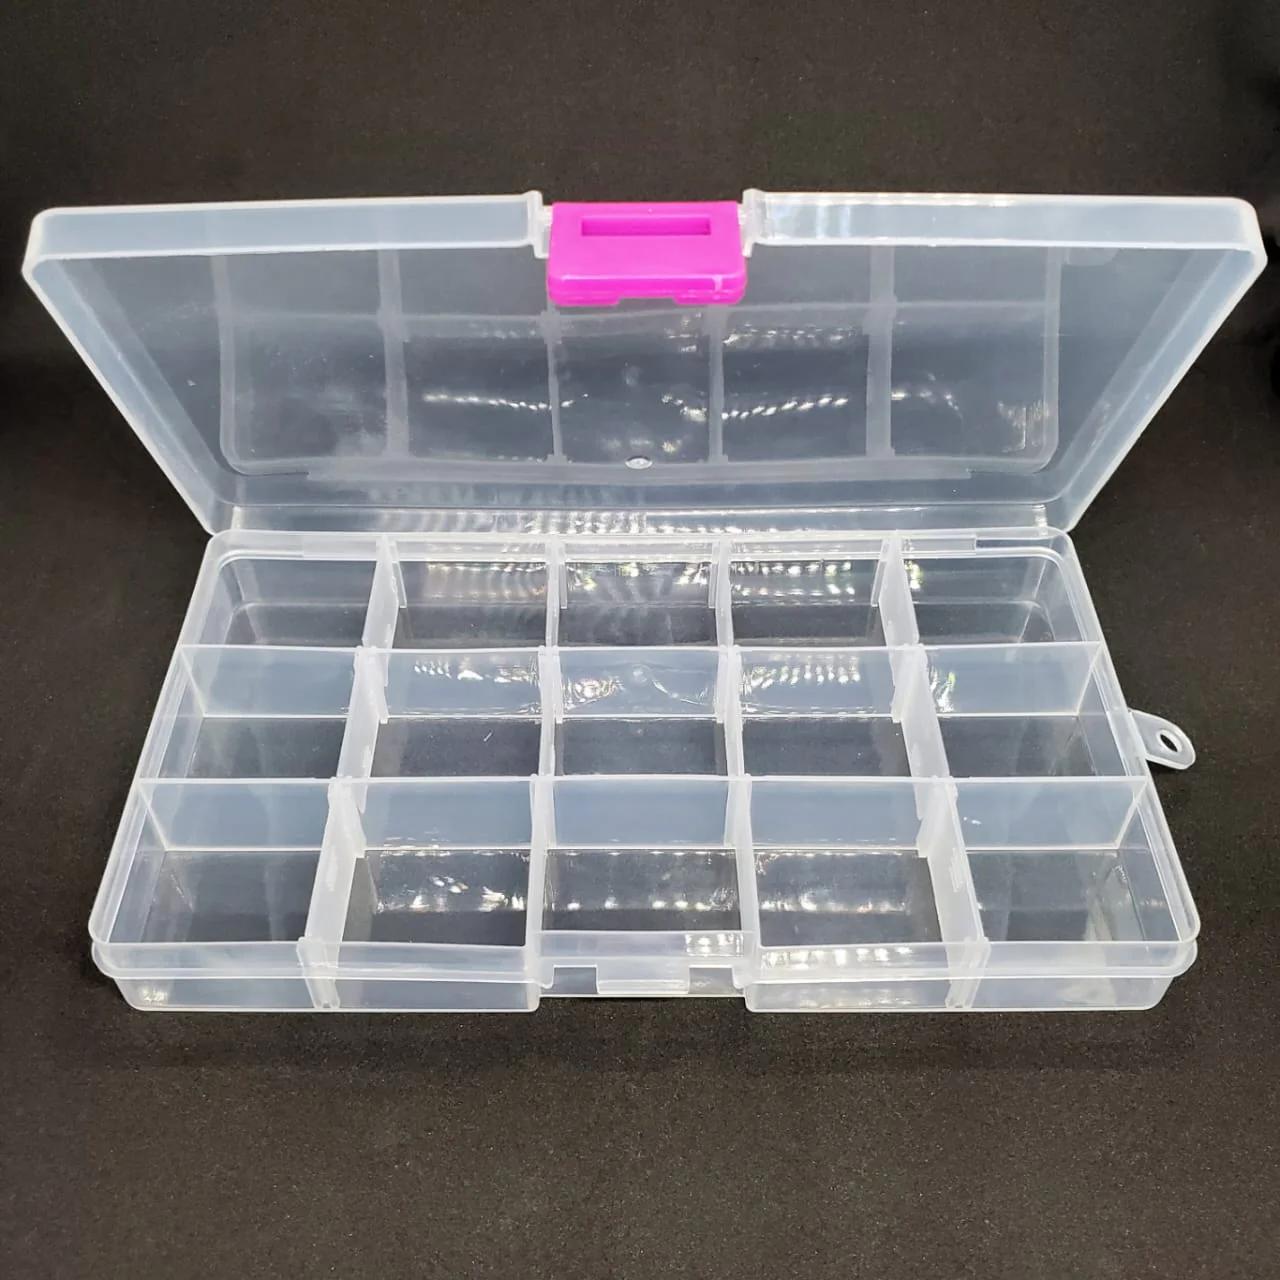 cajas de plastico transparente con divisiones - Qué son cajas apilables